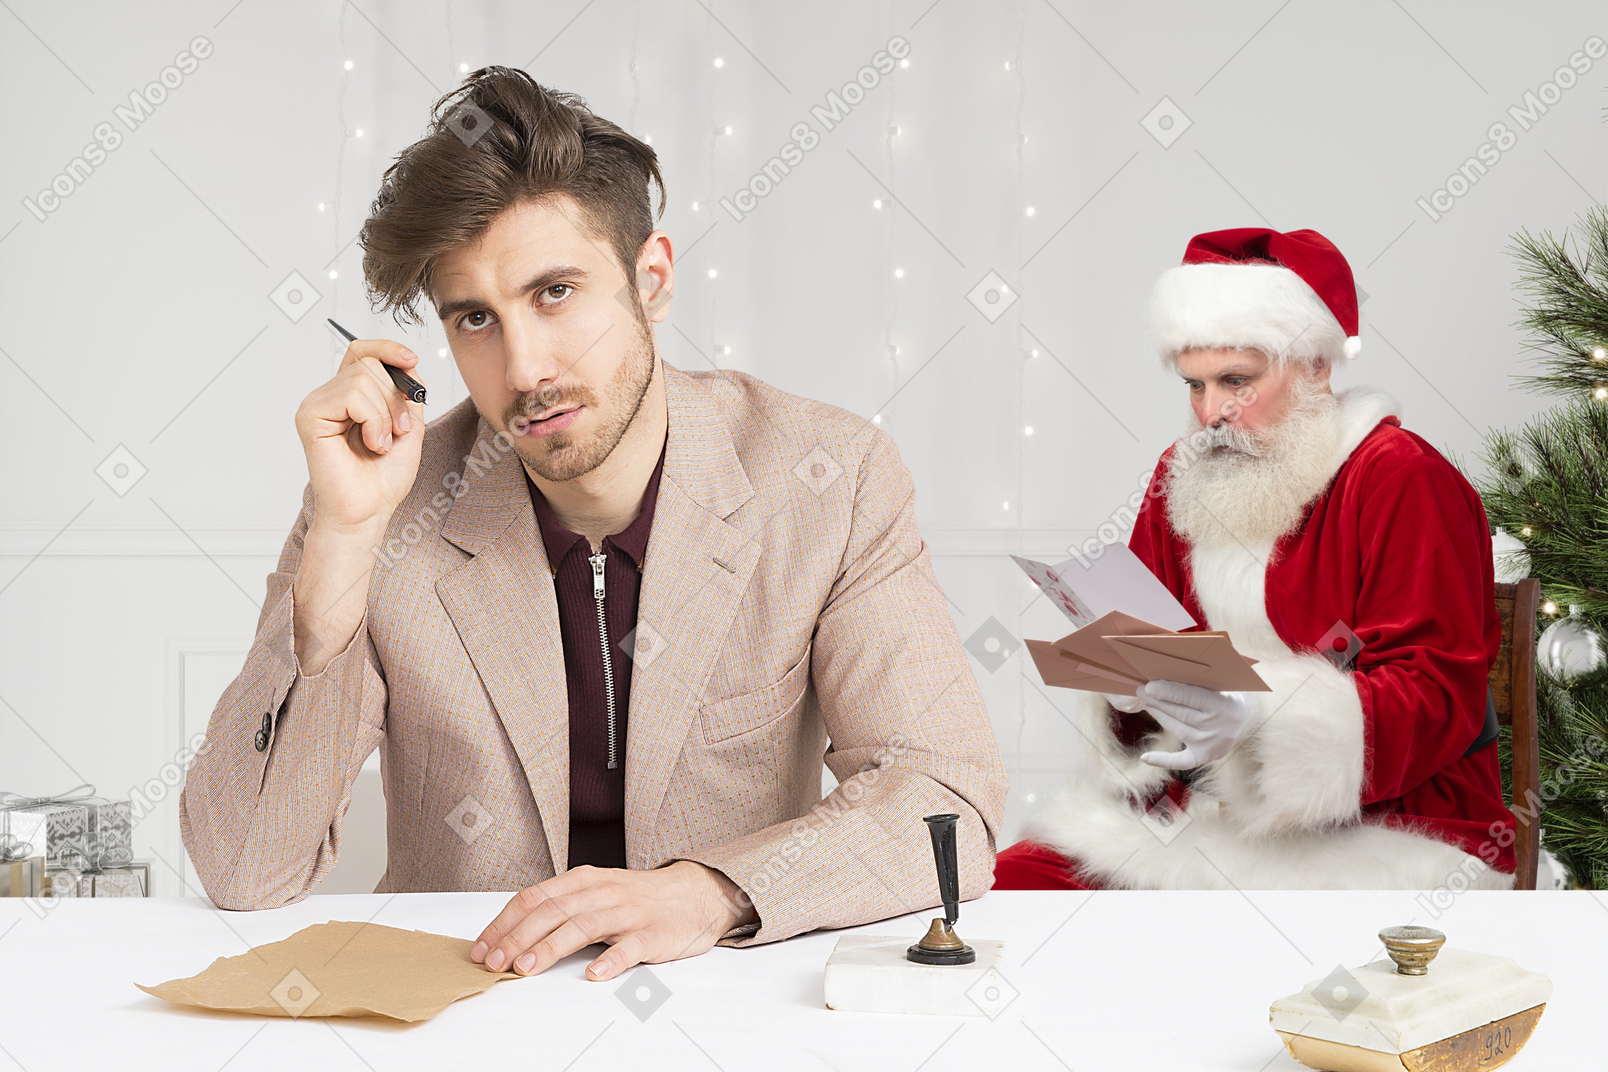 クリスマスのギフトリストを考えている若い男